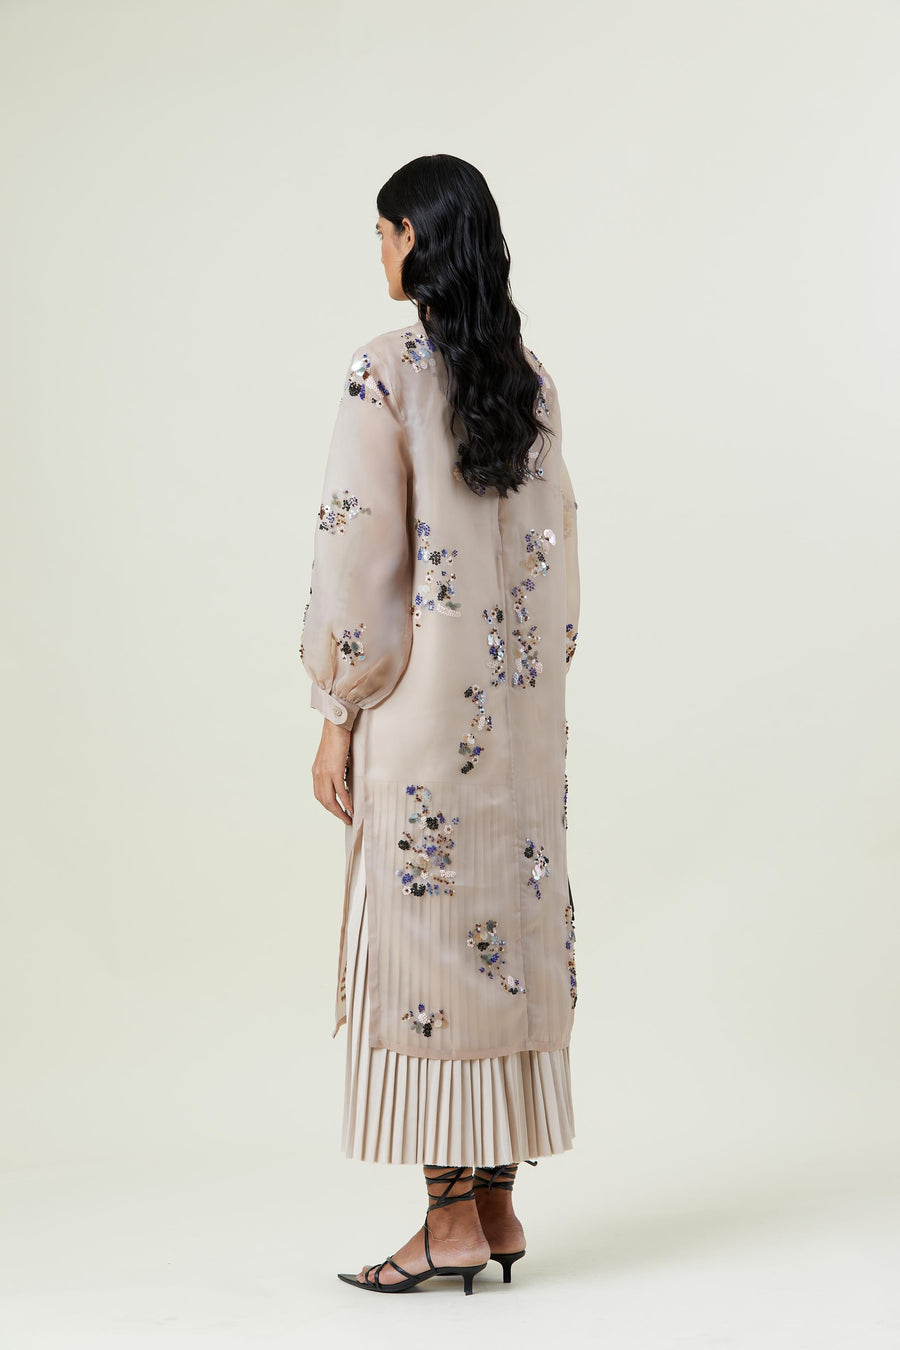 ‘ZEPHYR’ EMBELLISHED DRESS - Kanika Goyal Label